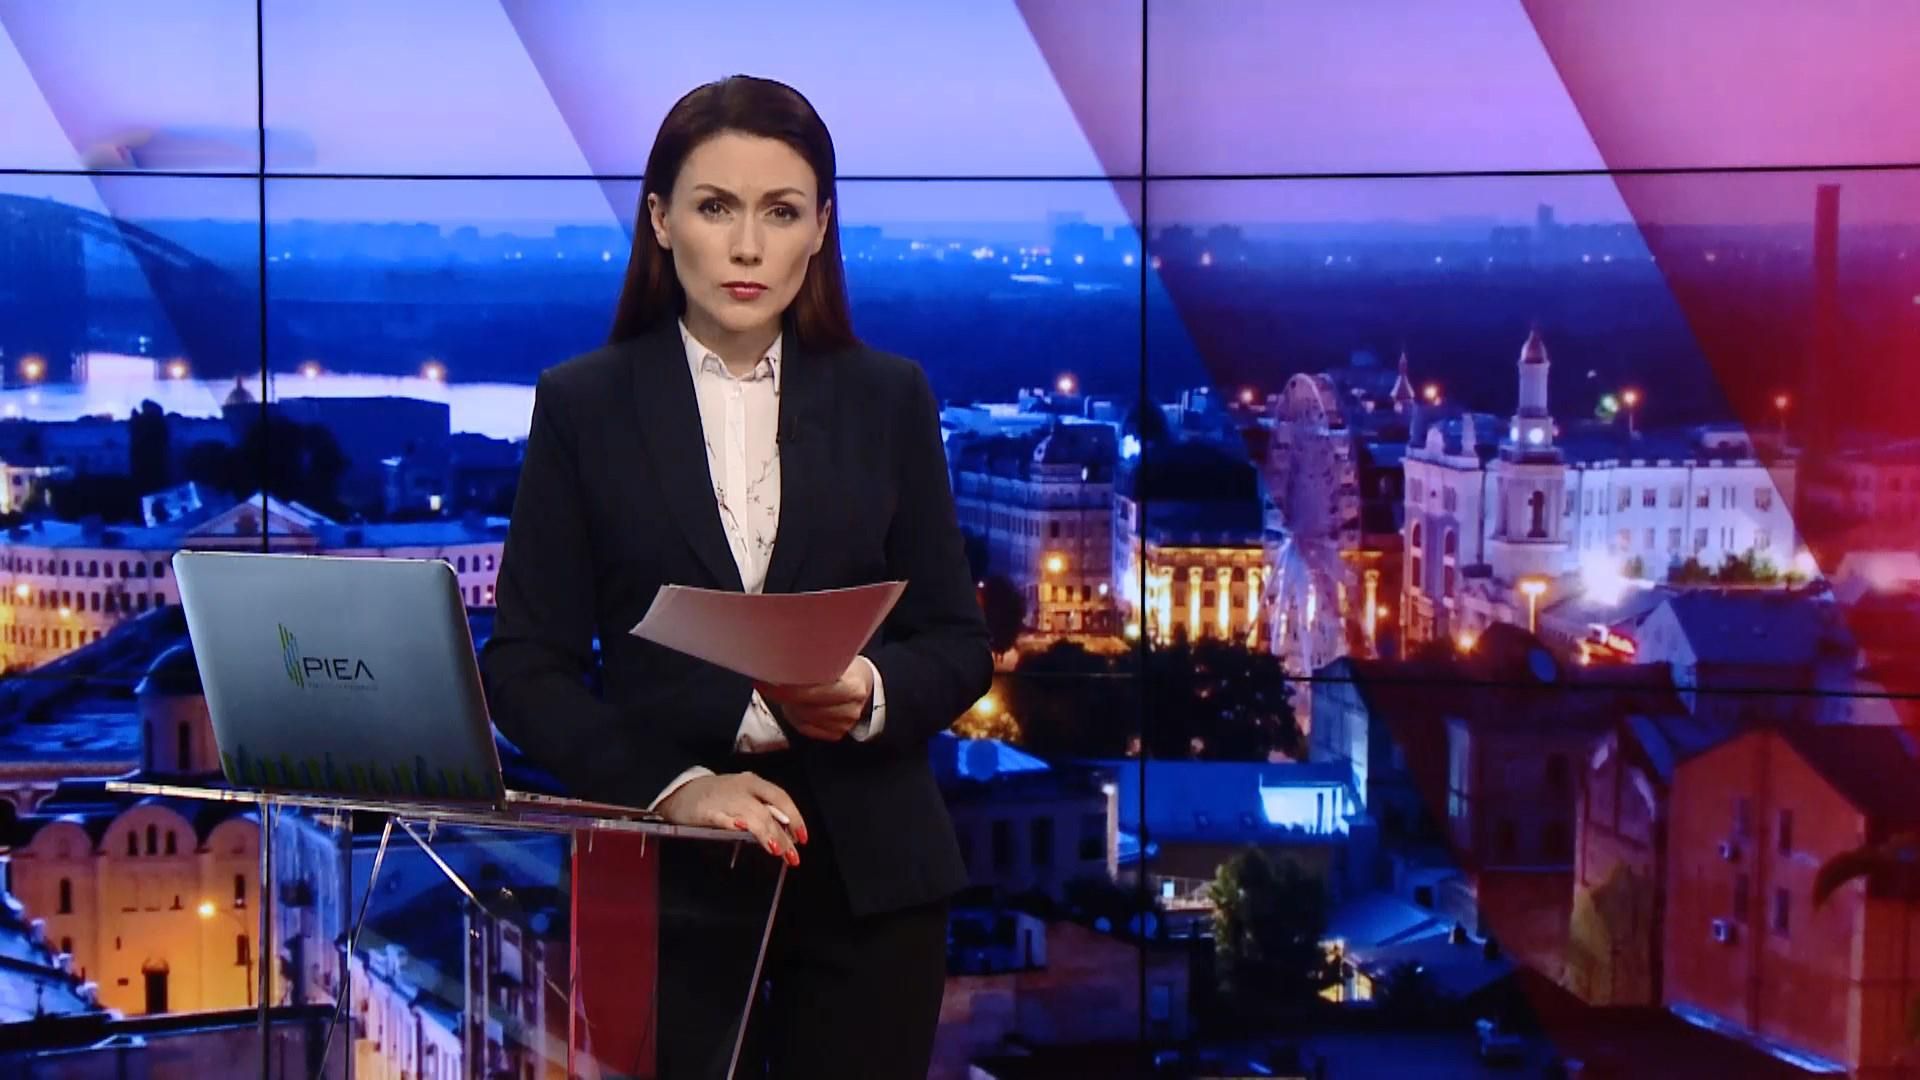 Итоговый выпуск новостей за 21:00: План бюджета на 2019 год. Участница схемы Онищенко